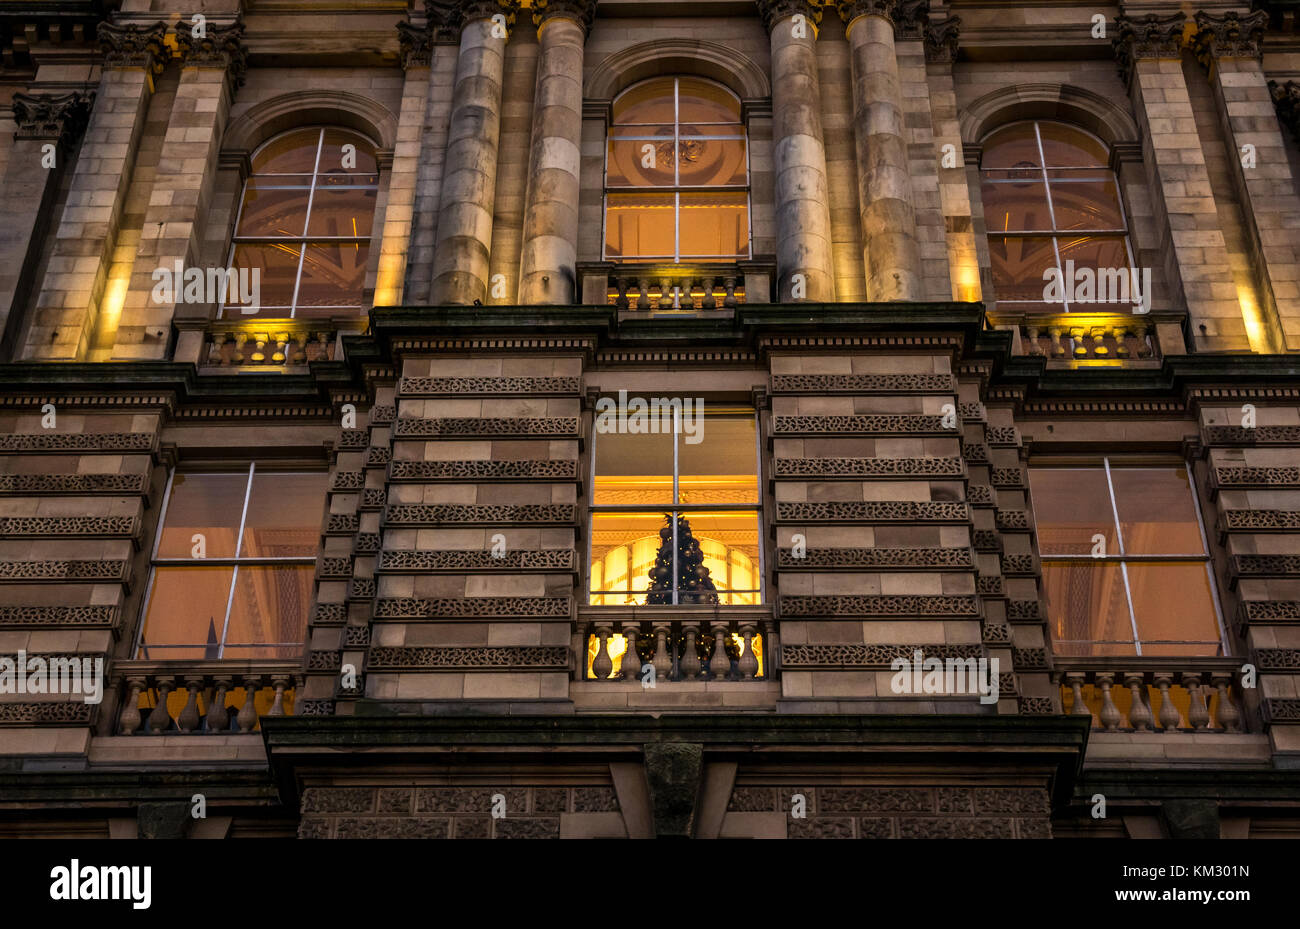 In der Nähe der viktorianischen Gebäude, Bank von Schottland Hauptquartier, die Hügel, die in der Dämmerung mit Weihnachtsbaum in Fenster, Edinburgh, Schottland, Großbritannien Stockfoto